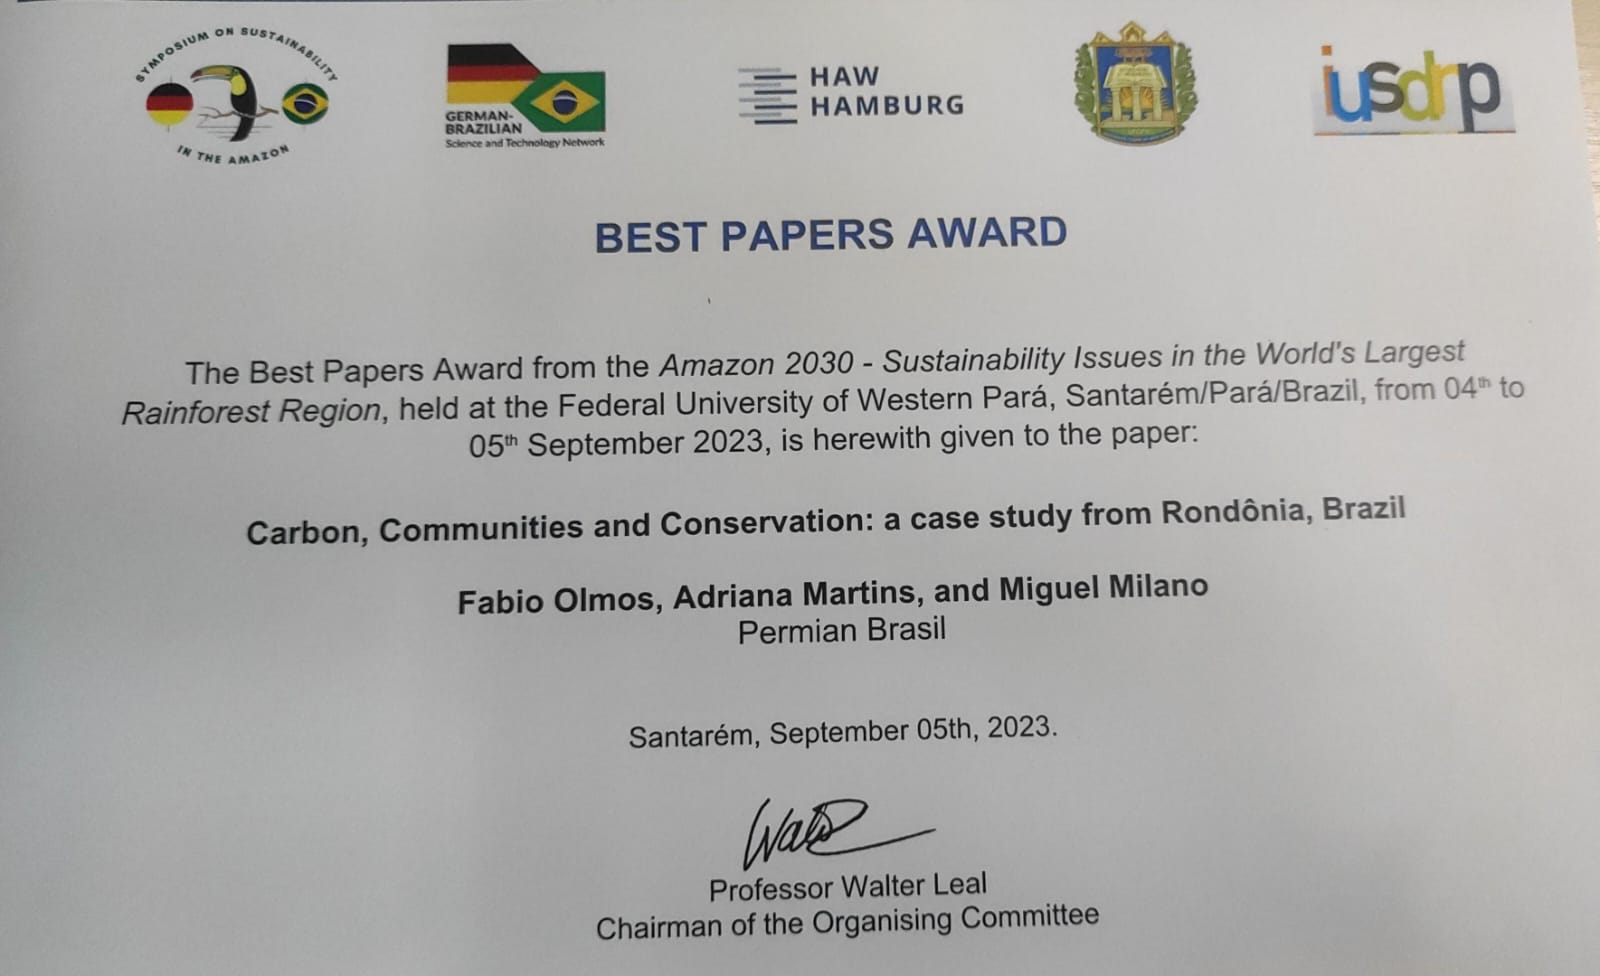 Fabio Olmos, diretor técnico da Permian Brasil, levou o prêmio de melhor case no Simpósio Amazônia 2030 com o trabalho “Carbono, Comunidades e Conservação: um Estudo de Caso de Rondônia, Brasil”